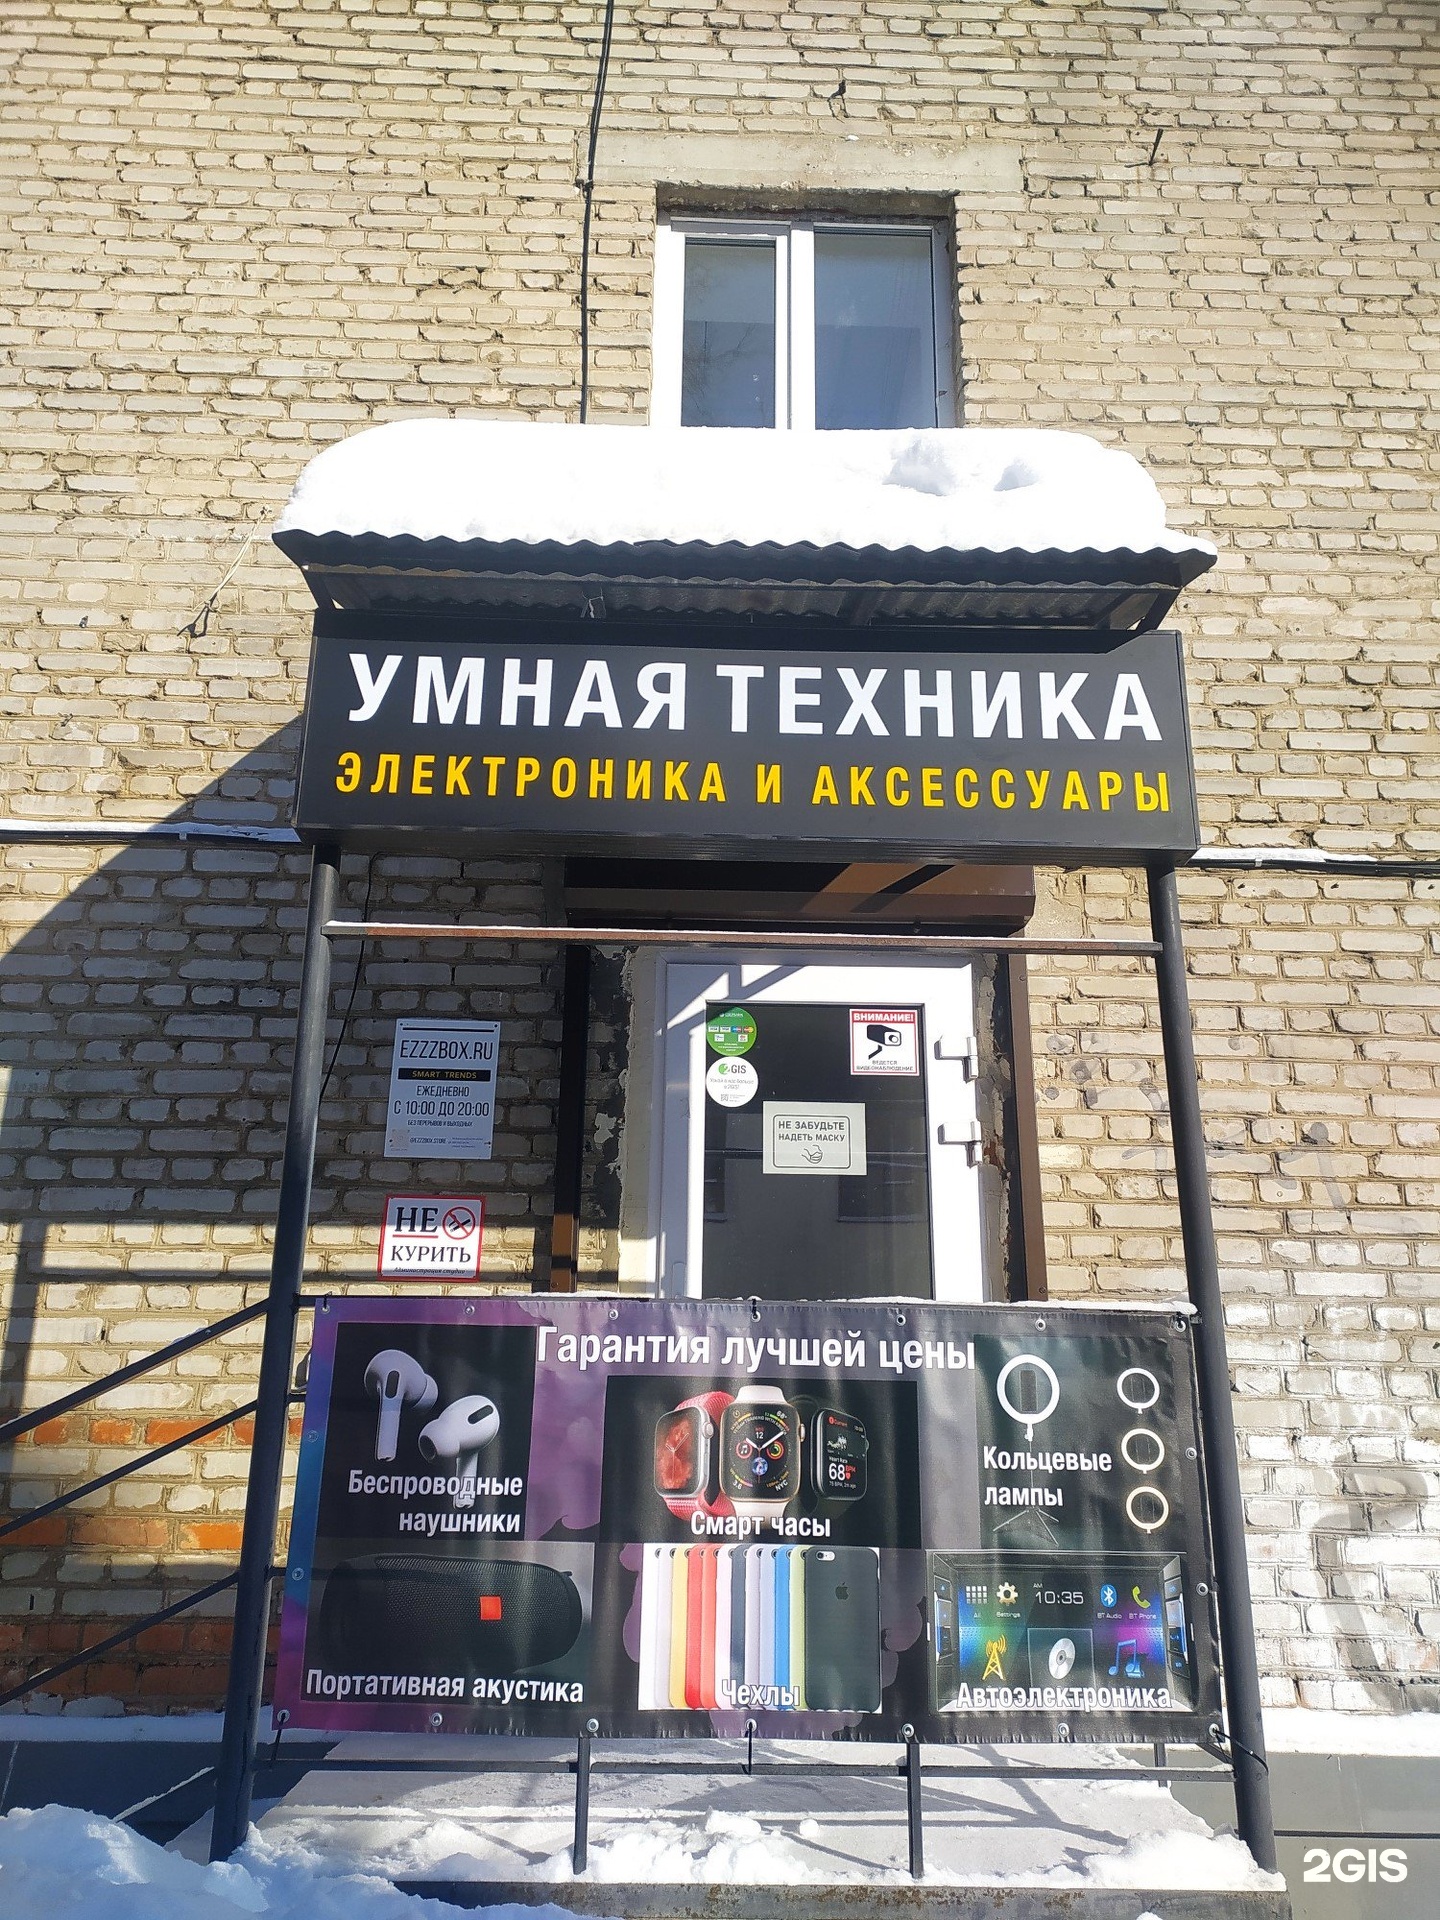 Телефон владимирского магазина. Ул.850-летия 1/46.